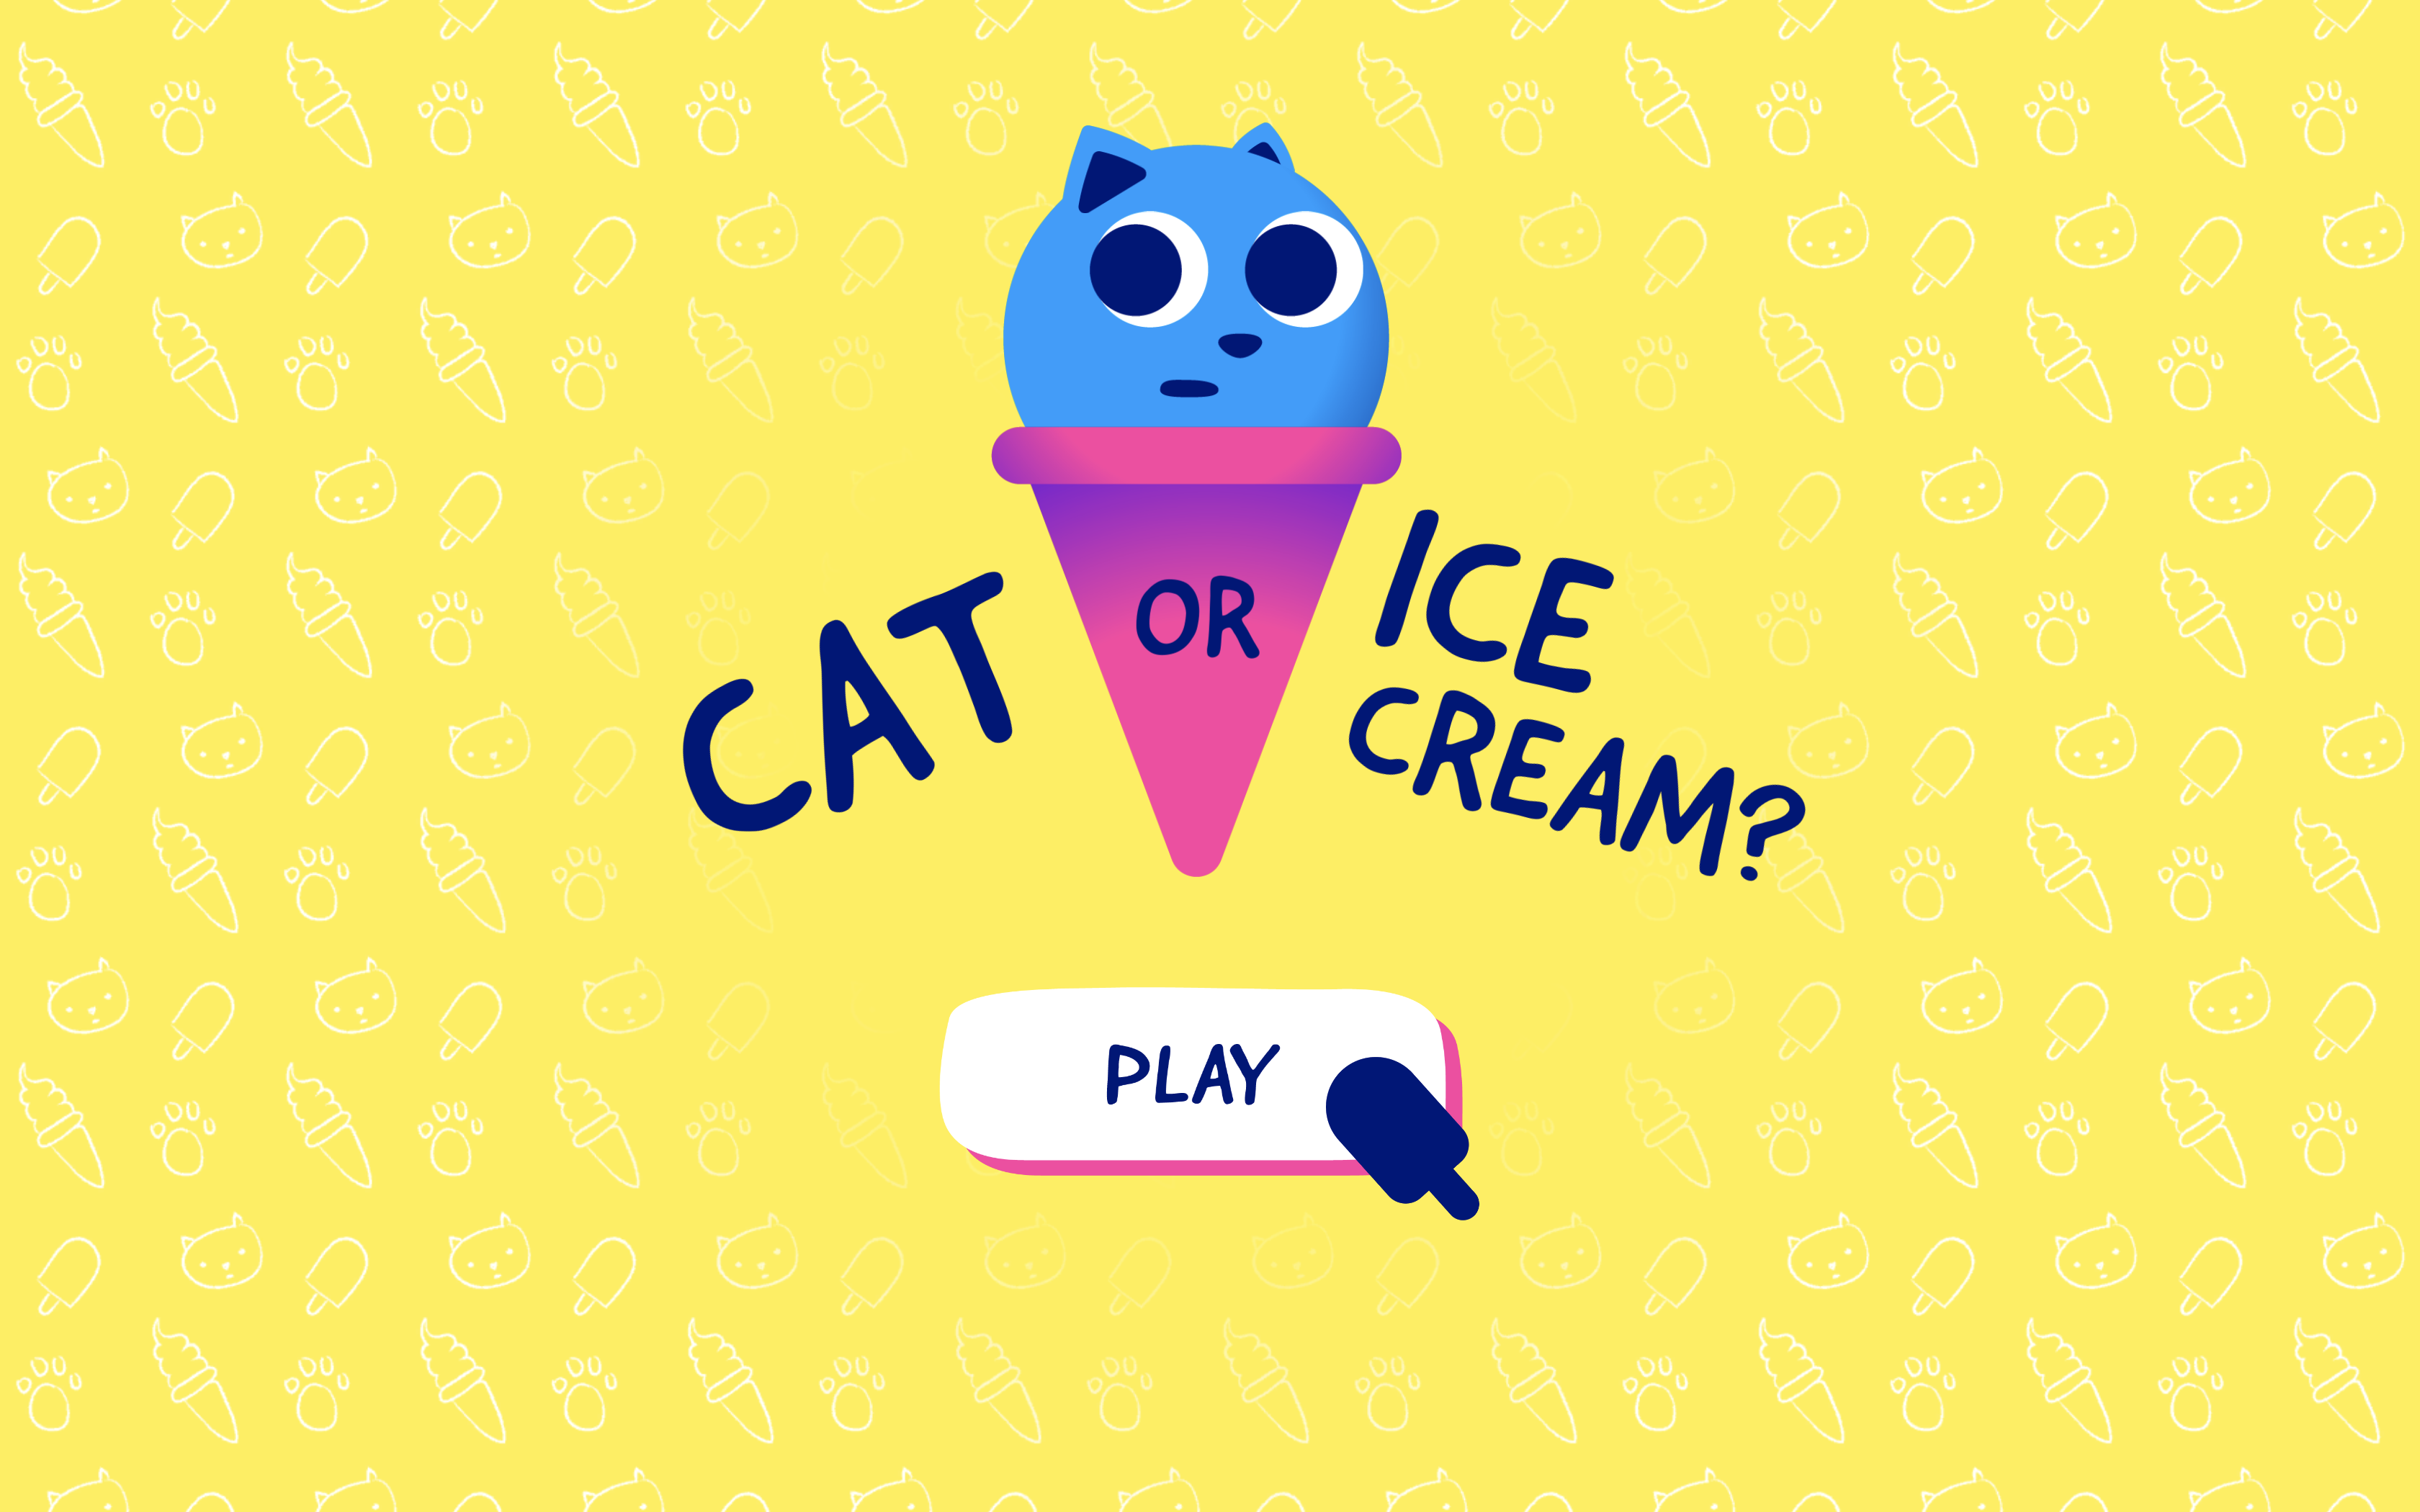 Cat or Ice Cream?